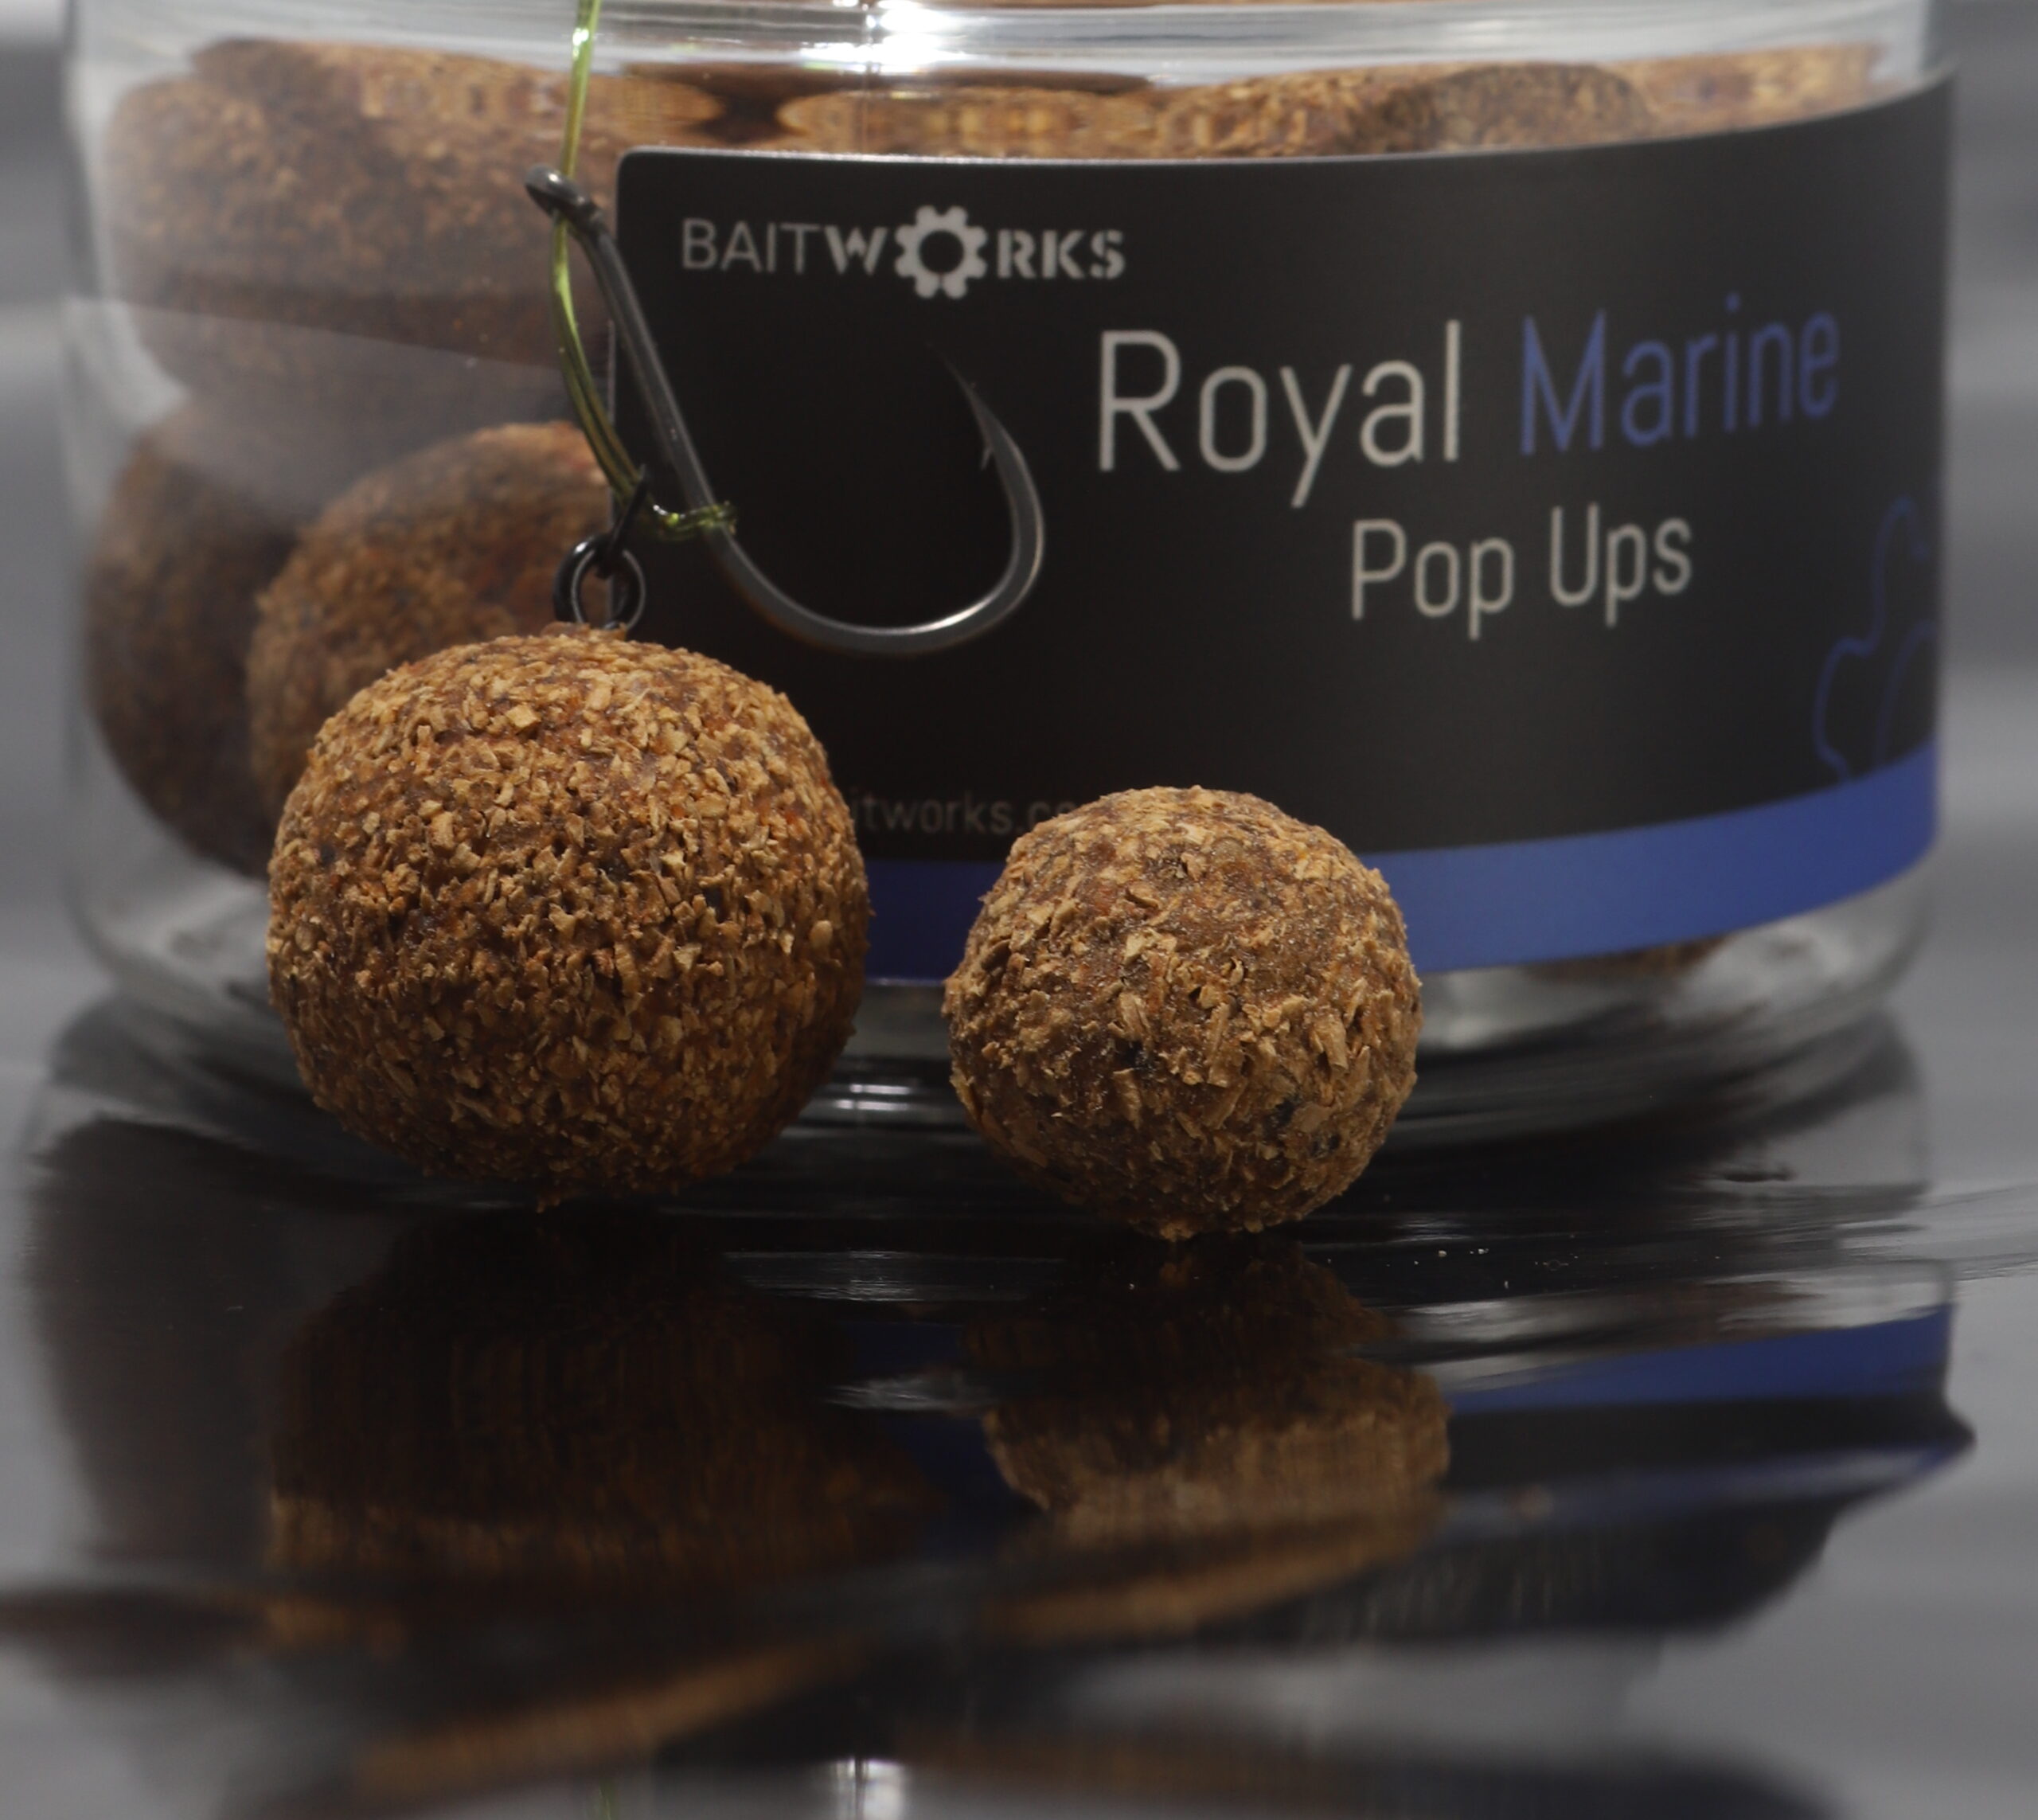 Royal Marine Pop ups